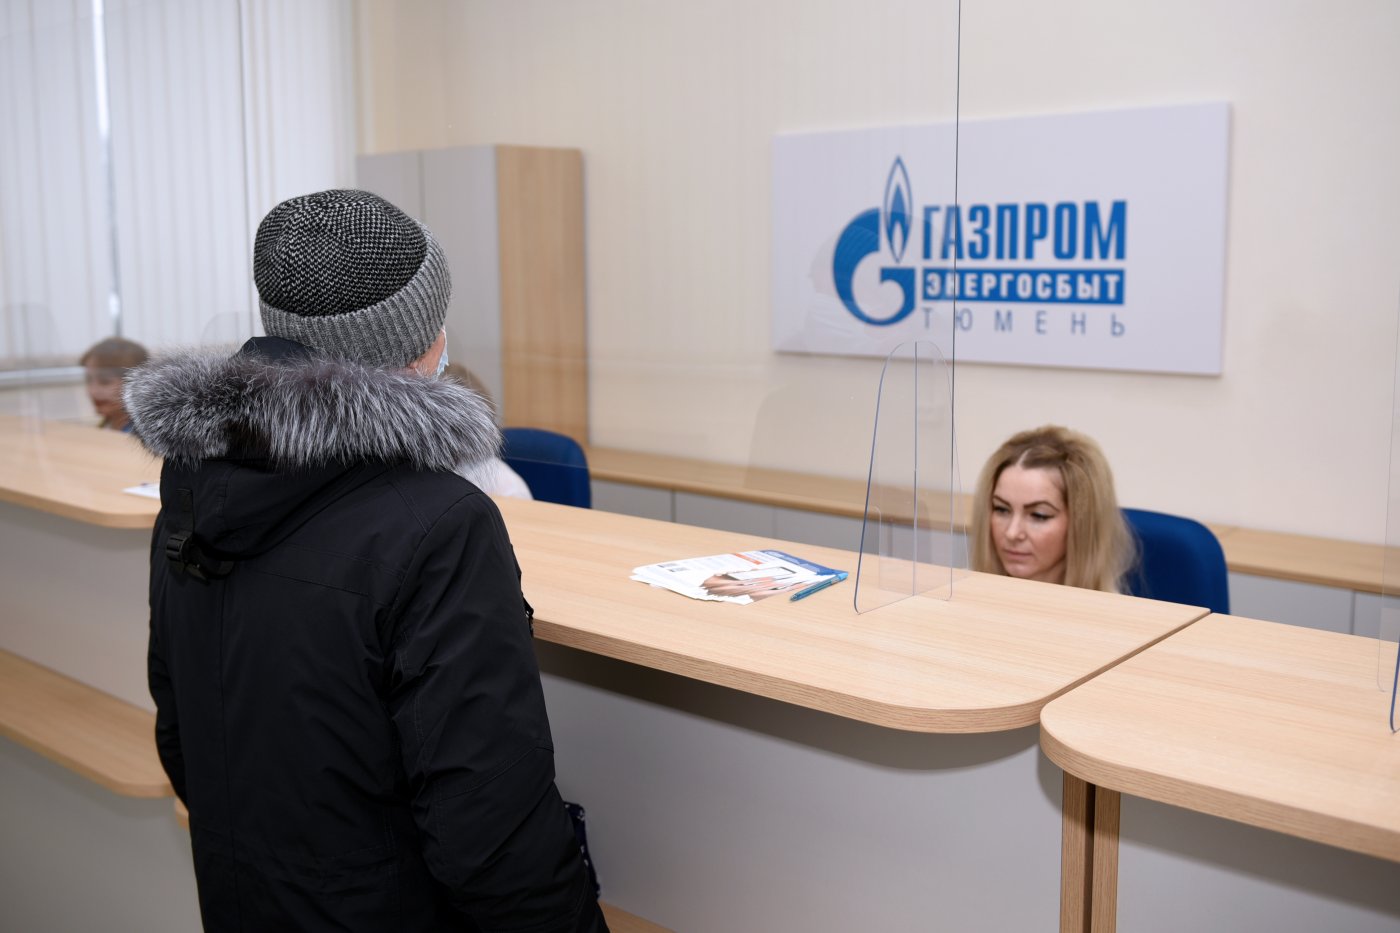 Центральный офис Газпрома 0. Картинка РКЦ Нефтеюганск. Нефтеюганск когалым